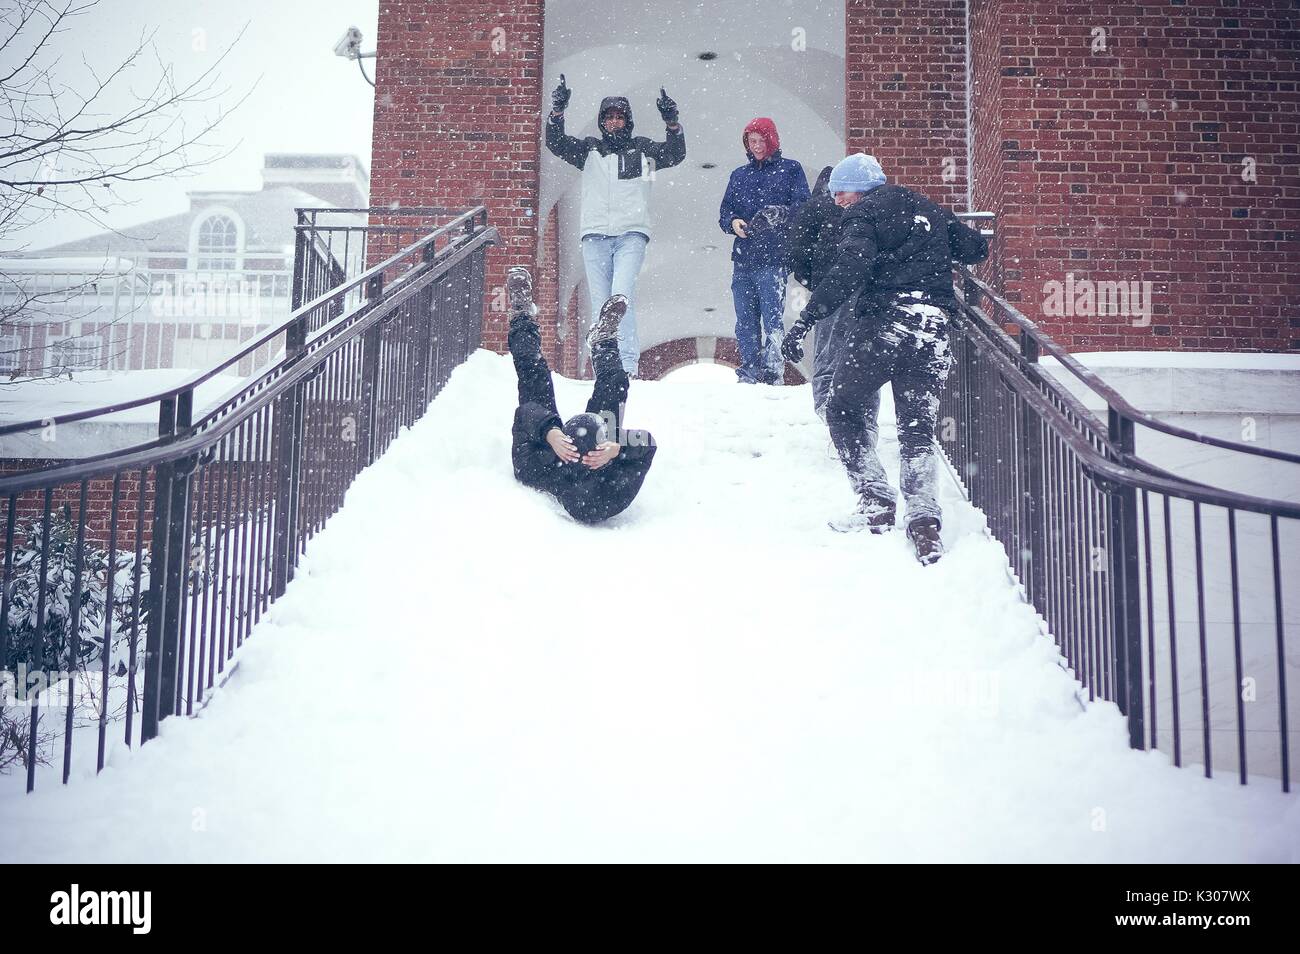 Un estudiante se desliza hacia atrás con las piernas en el aire y los brazos alrededor de su cabeza, bajando una escalera nevados mientras mis amigos en marcha la nieve anima desde la parte superior de las escaleras, durante un día de nieve en la Universidad Johns Hopkins, Baltimore, Maryland, en 2016. Foto de stock